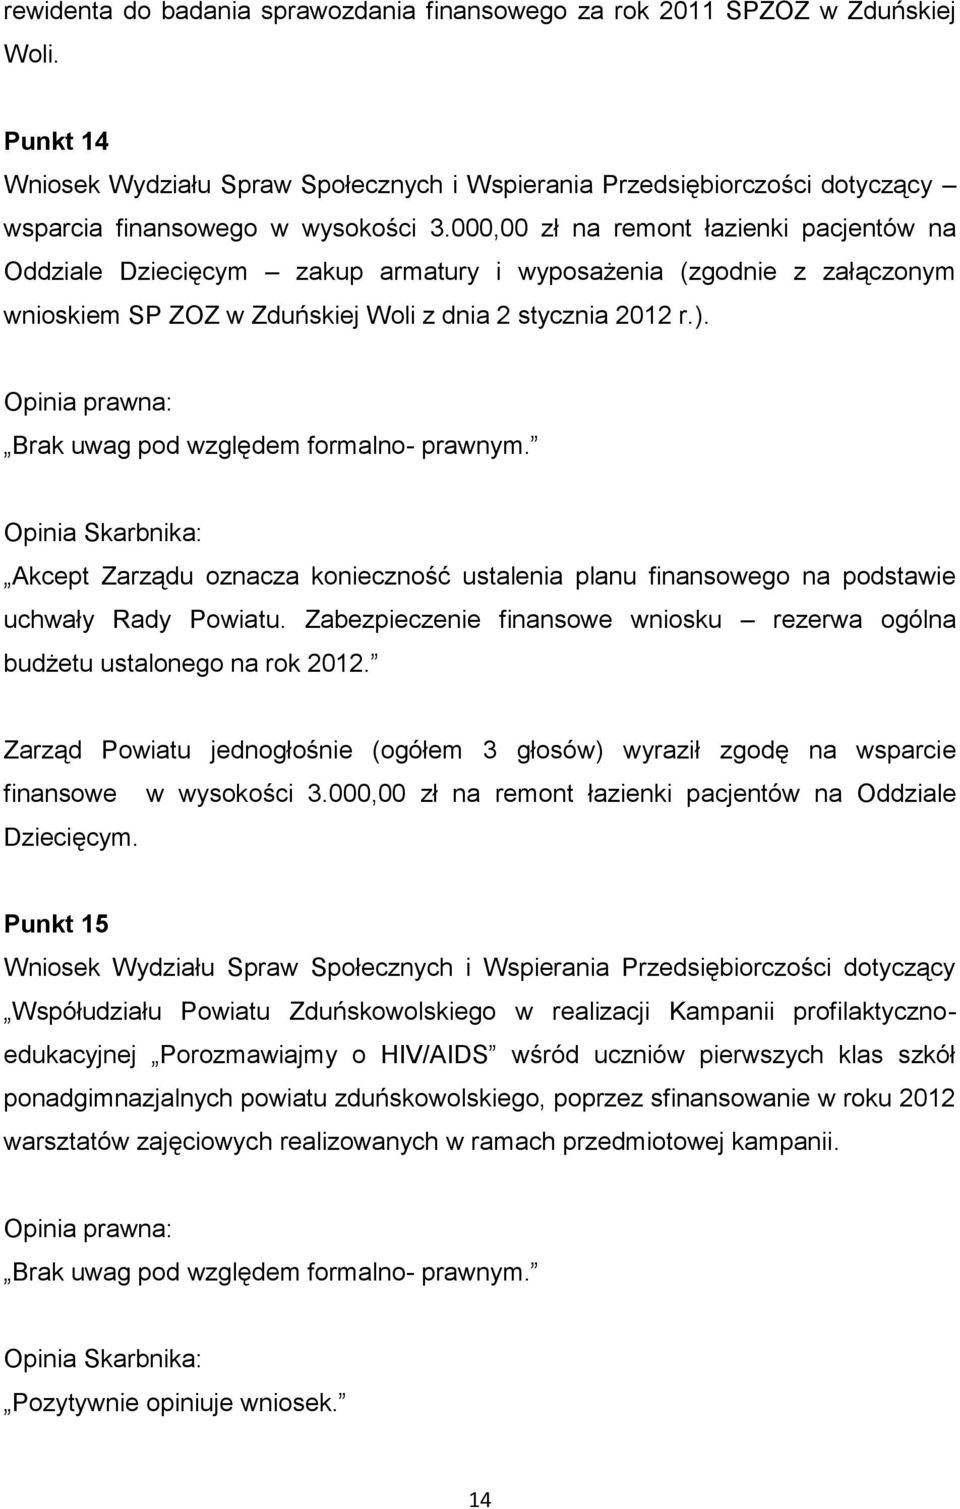 000,00 zł na remont łazienki pacjentów na Oddziale Dziecięcym zakup armatury i wyposażenia (zgodnie z załączonym wnioskiem SP ZOZ w Zduńskiej Woli z dnia 2 stycznia 2012 r.).